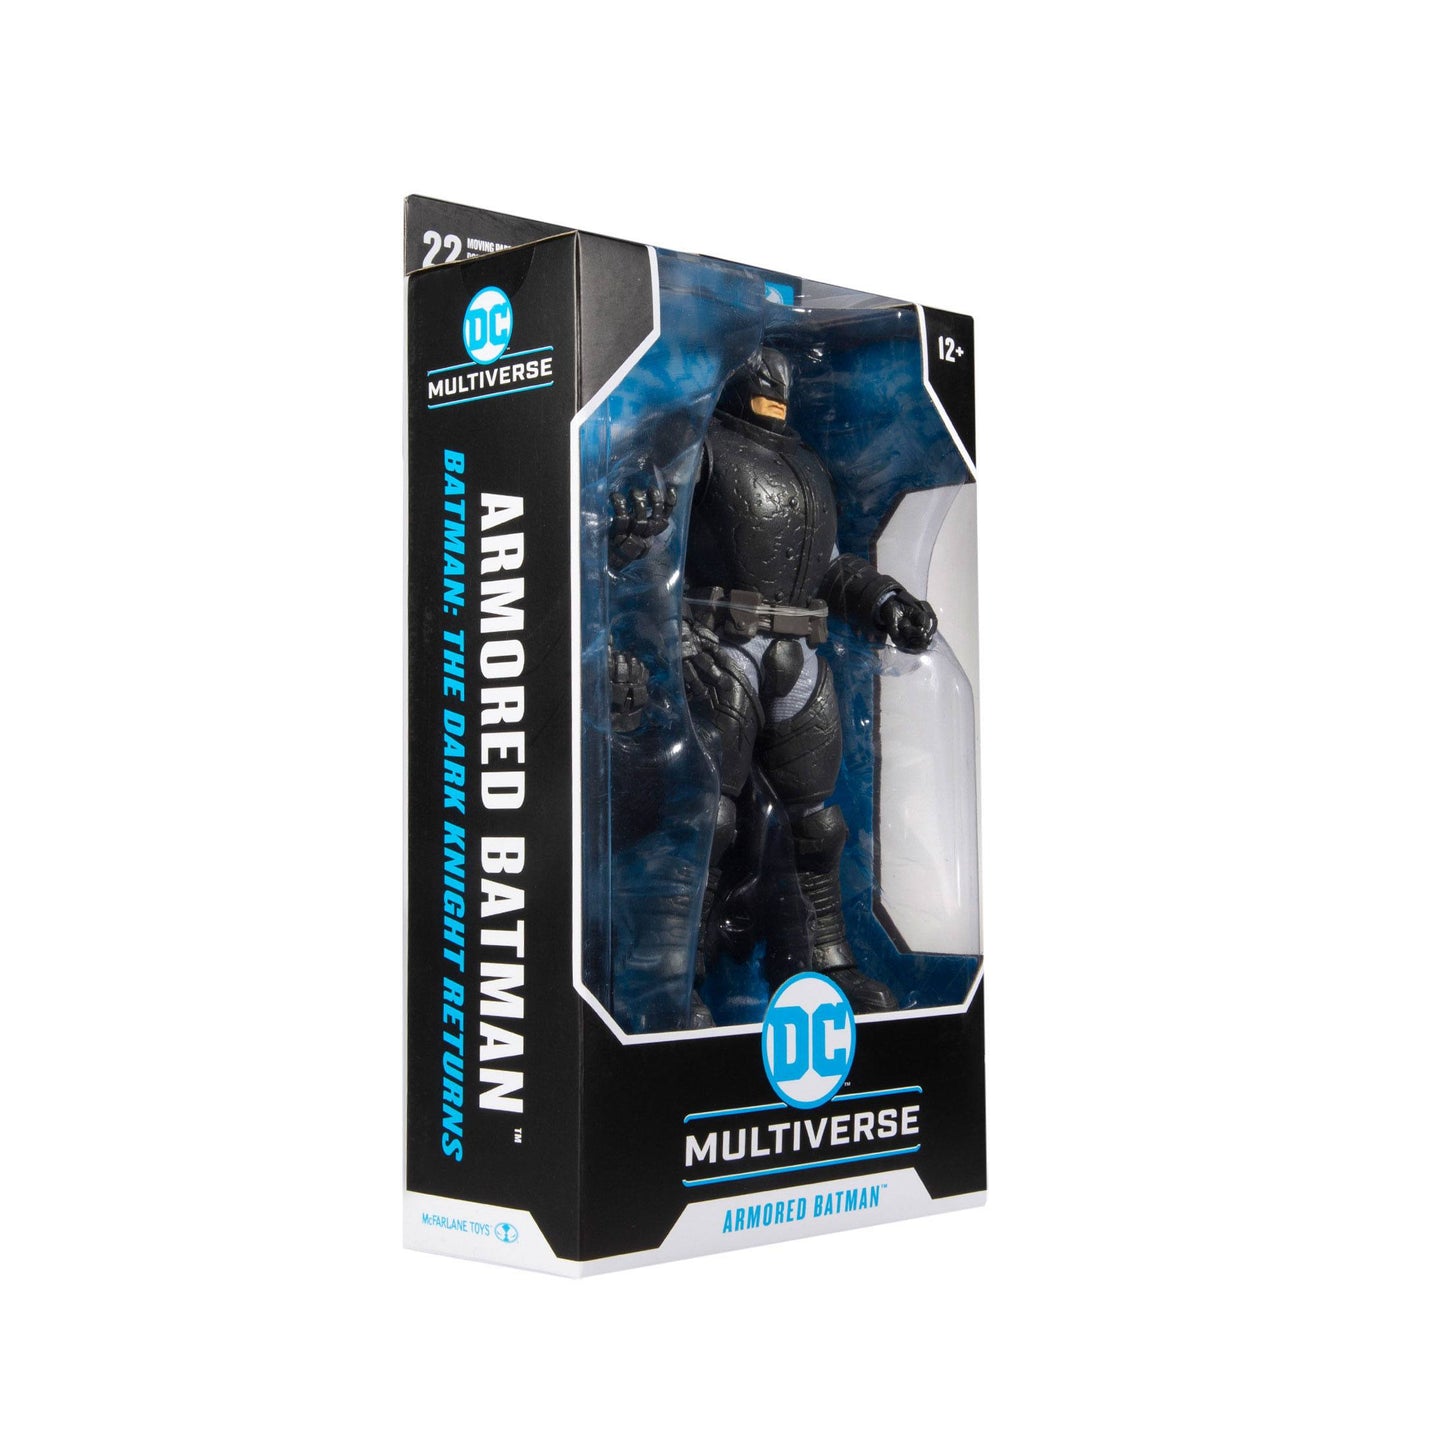 Batman Armor - Articulated figurine